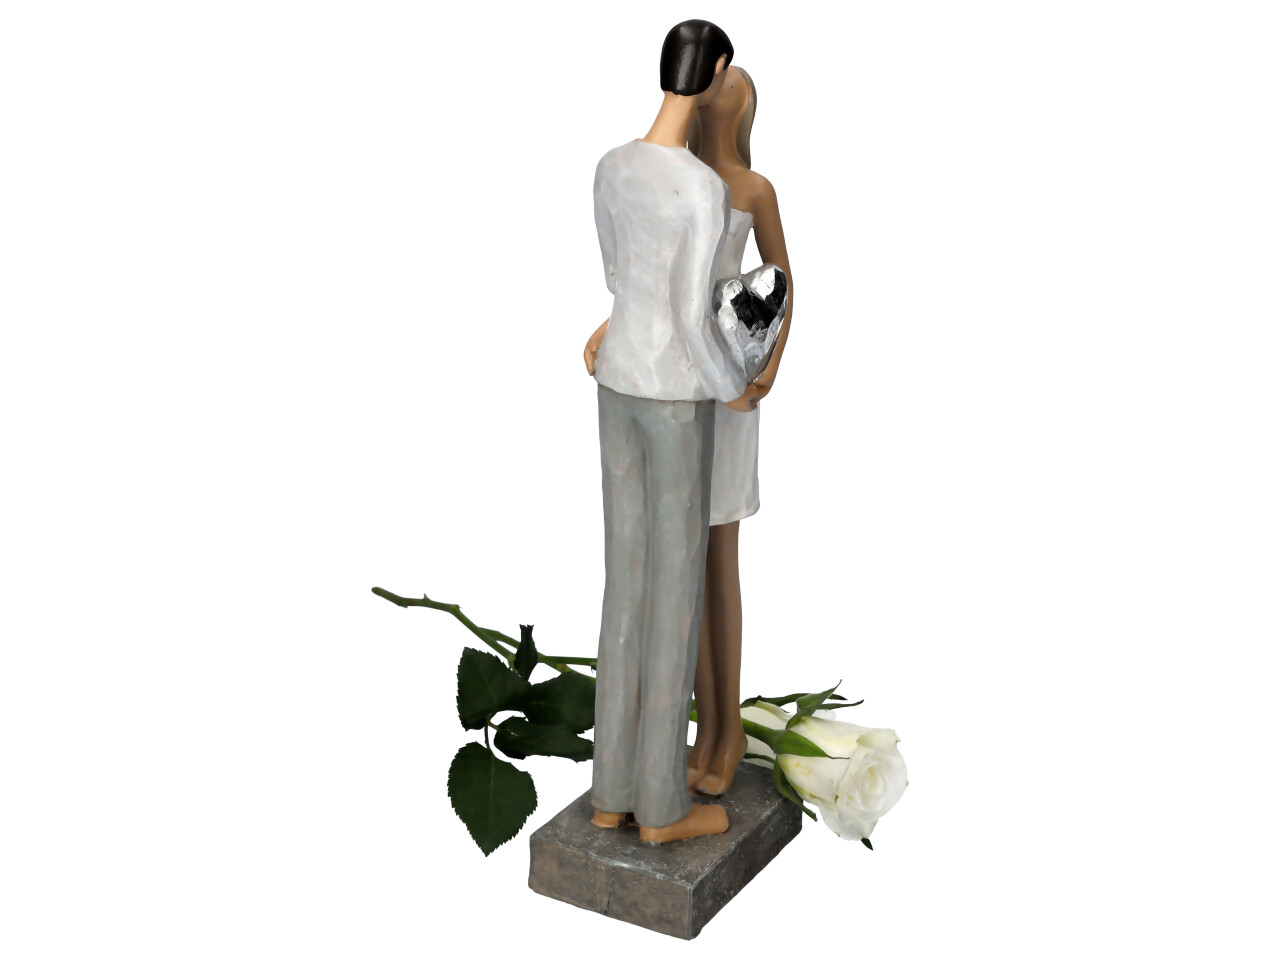 Küssendes Liebespaar stehend mit kleinem Silberherz in den Händen Rückenansicht Bräutigam mit weißer Rose drappiert